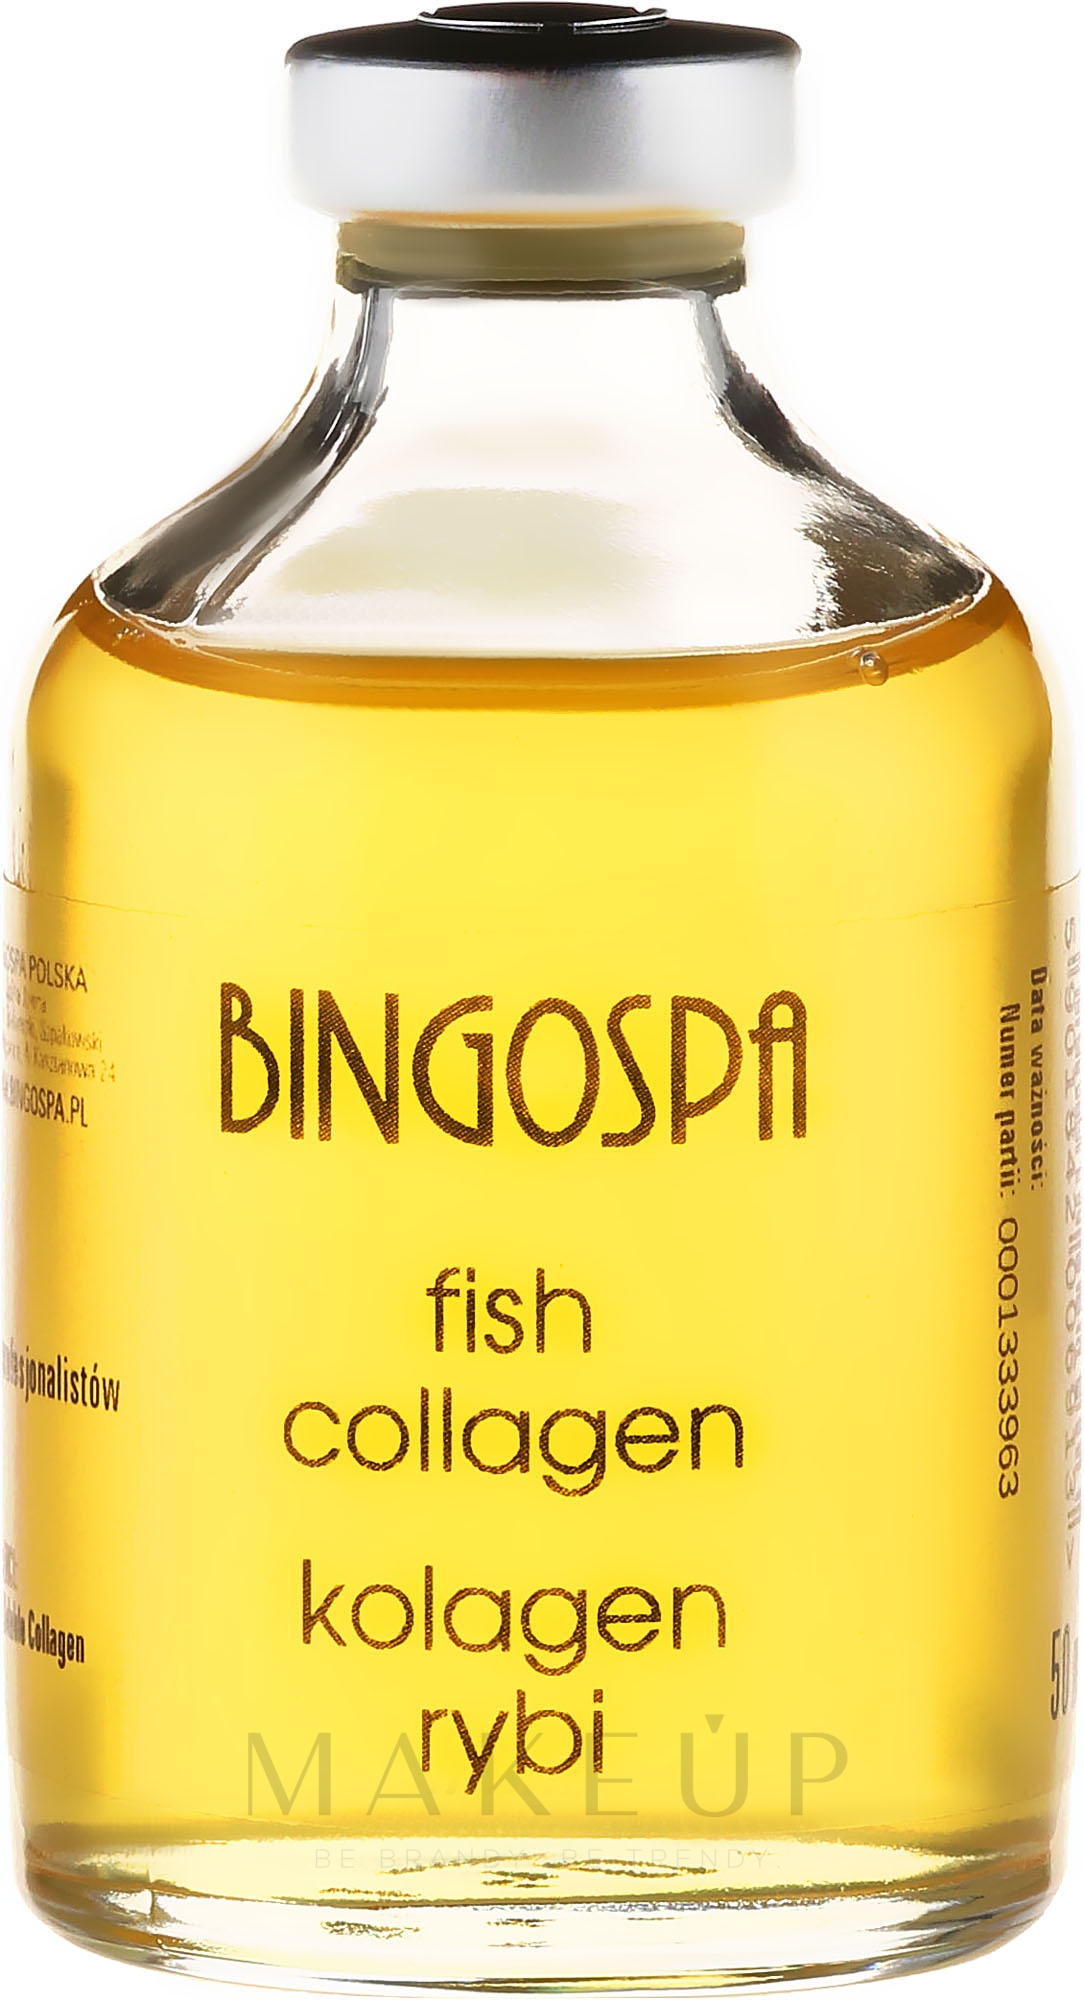 Fischkollagen - Bingospa Fish Collagen — Foto 50 ml